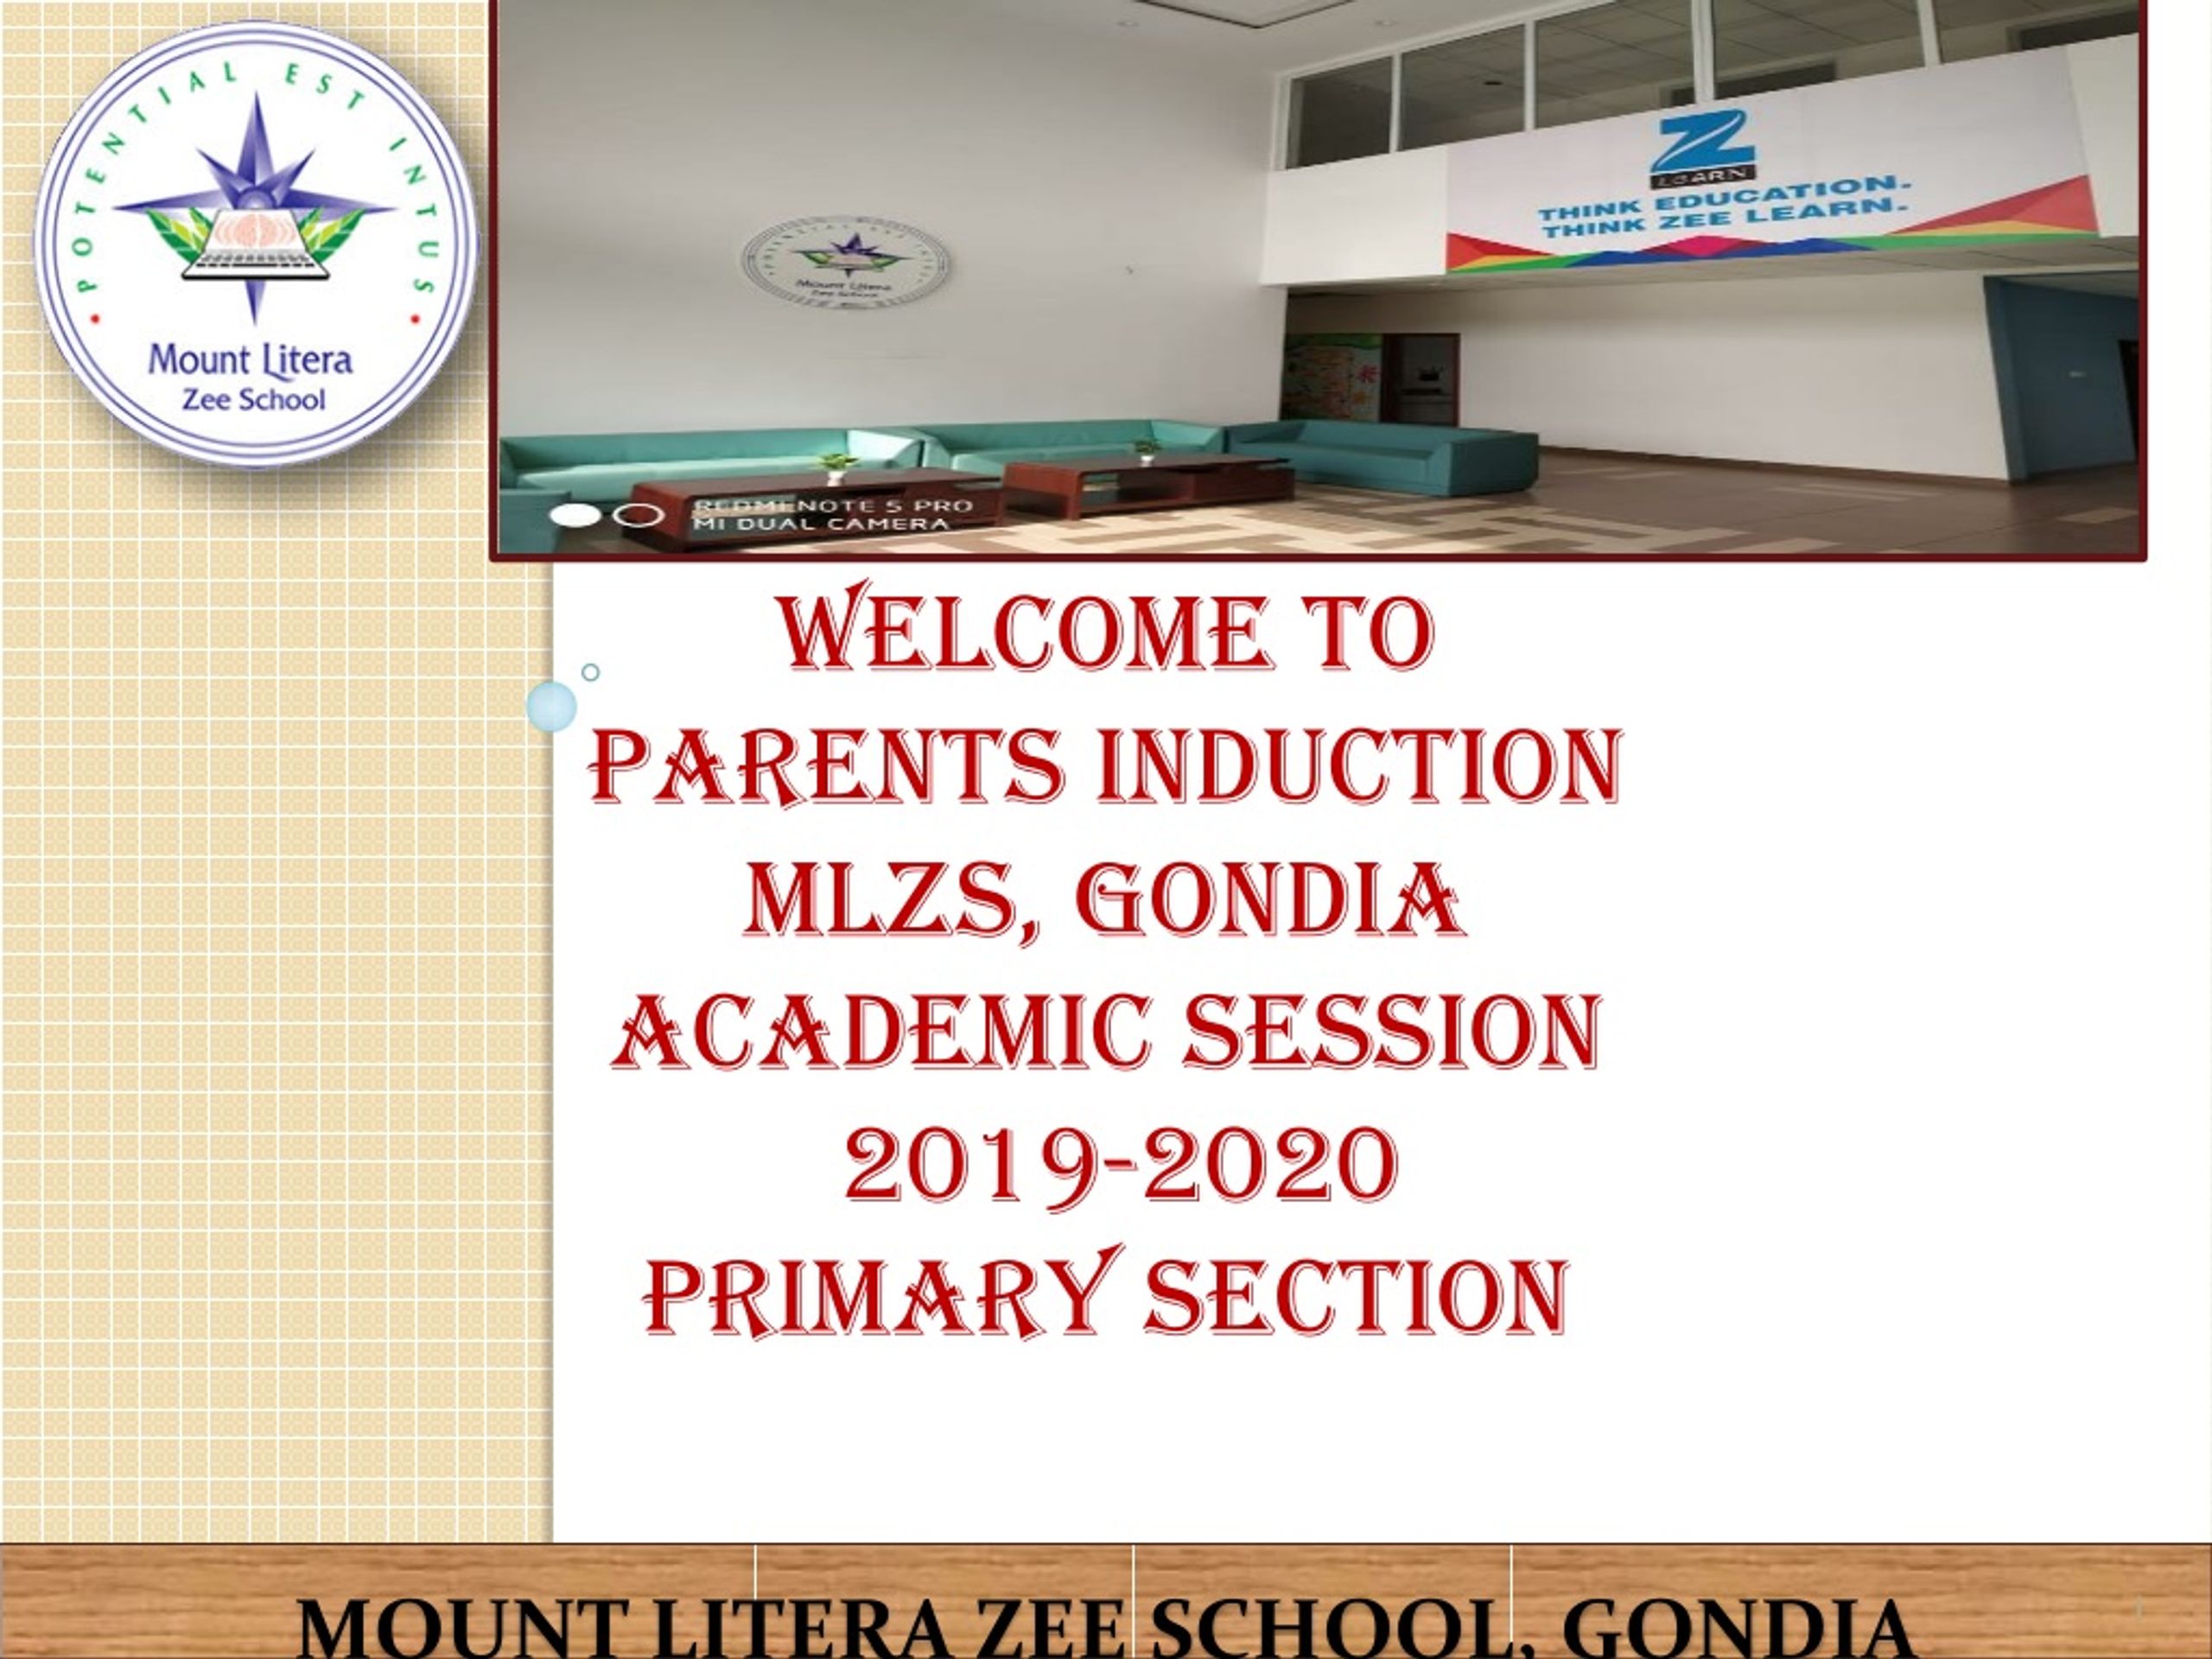 MOUNT LITERA ZEE SCHOOL